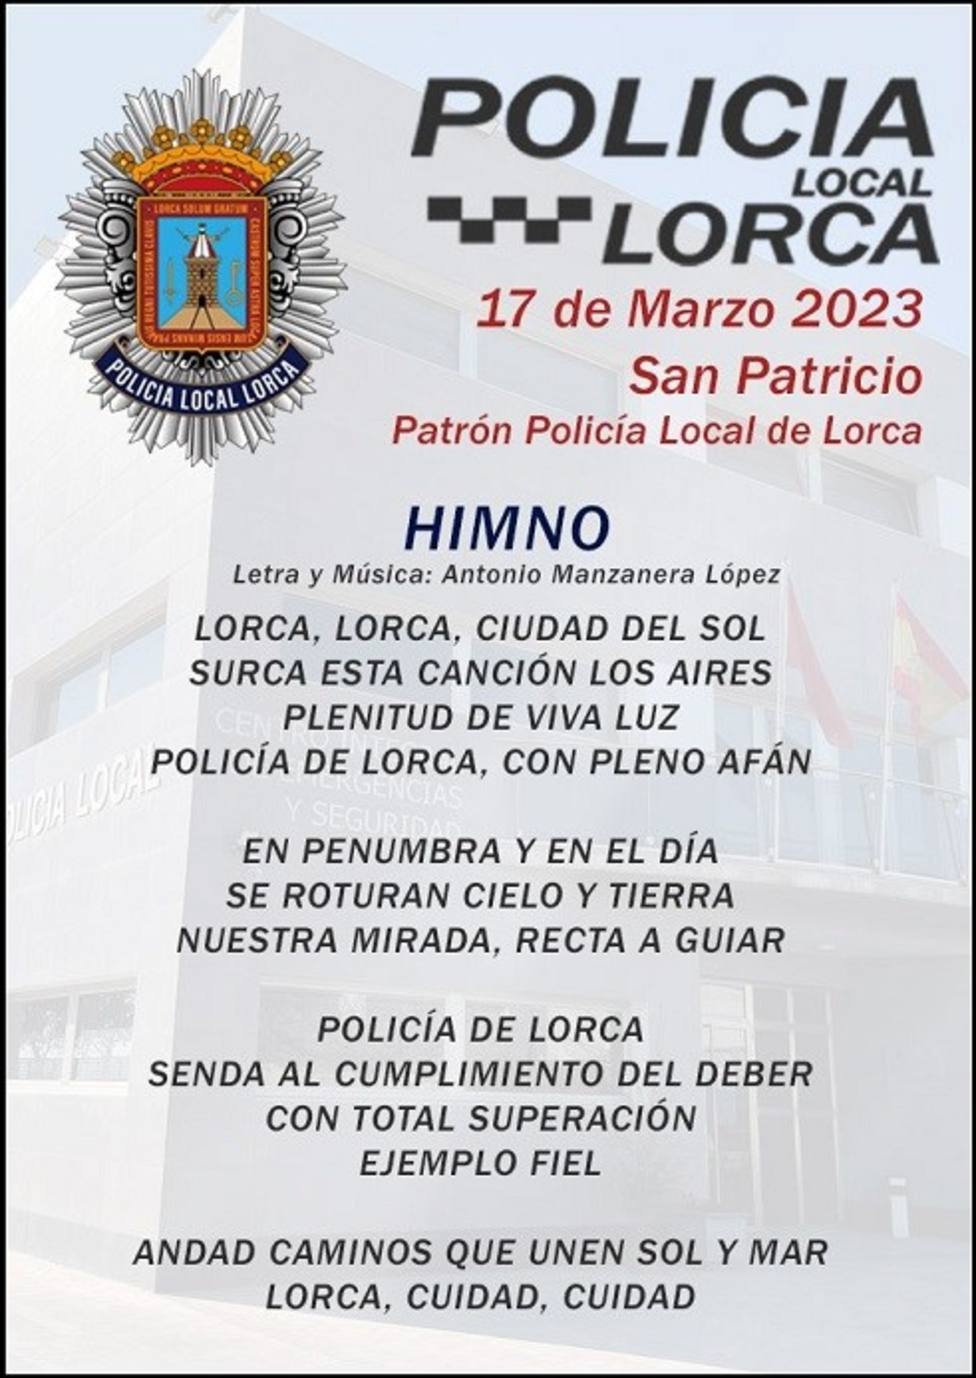 La Policía Local estrenará nuevo himno con motivo de su patrón, San  Patricio. - Lorca - COPE